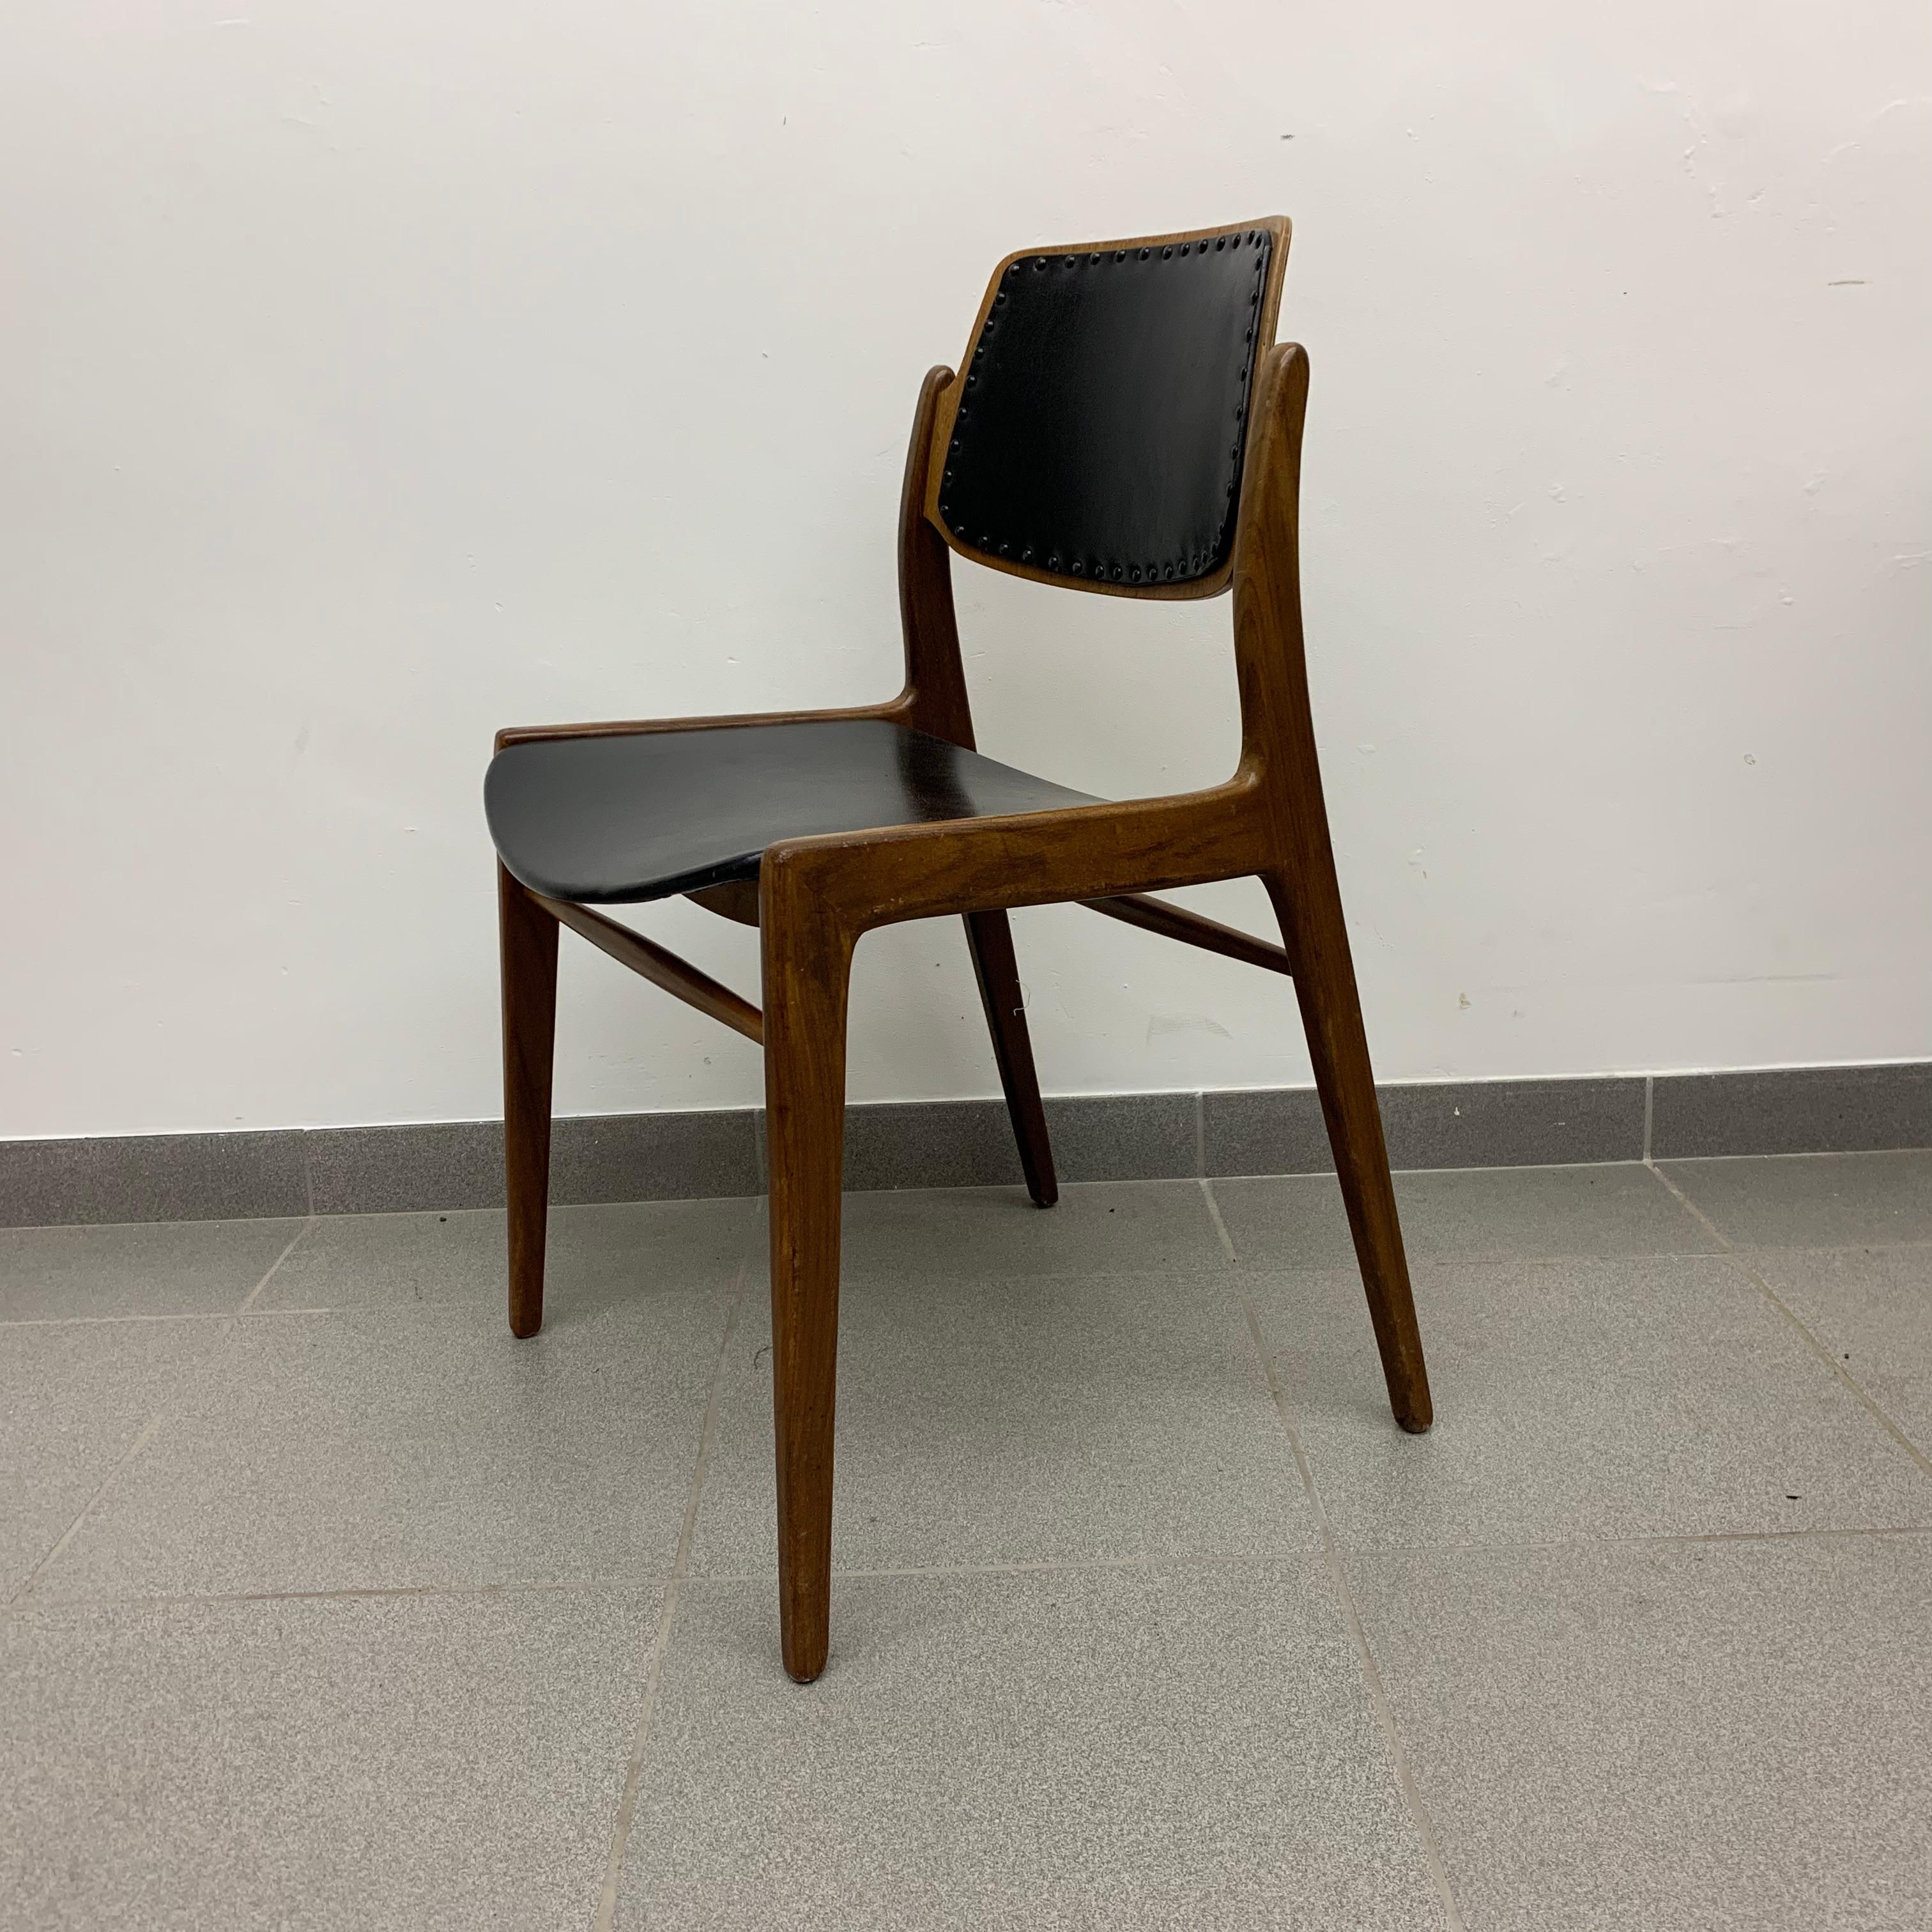 German Hartmut Lohmeyer for Wilkhahn 1950’s dining chair teak wood design For Sale